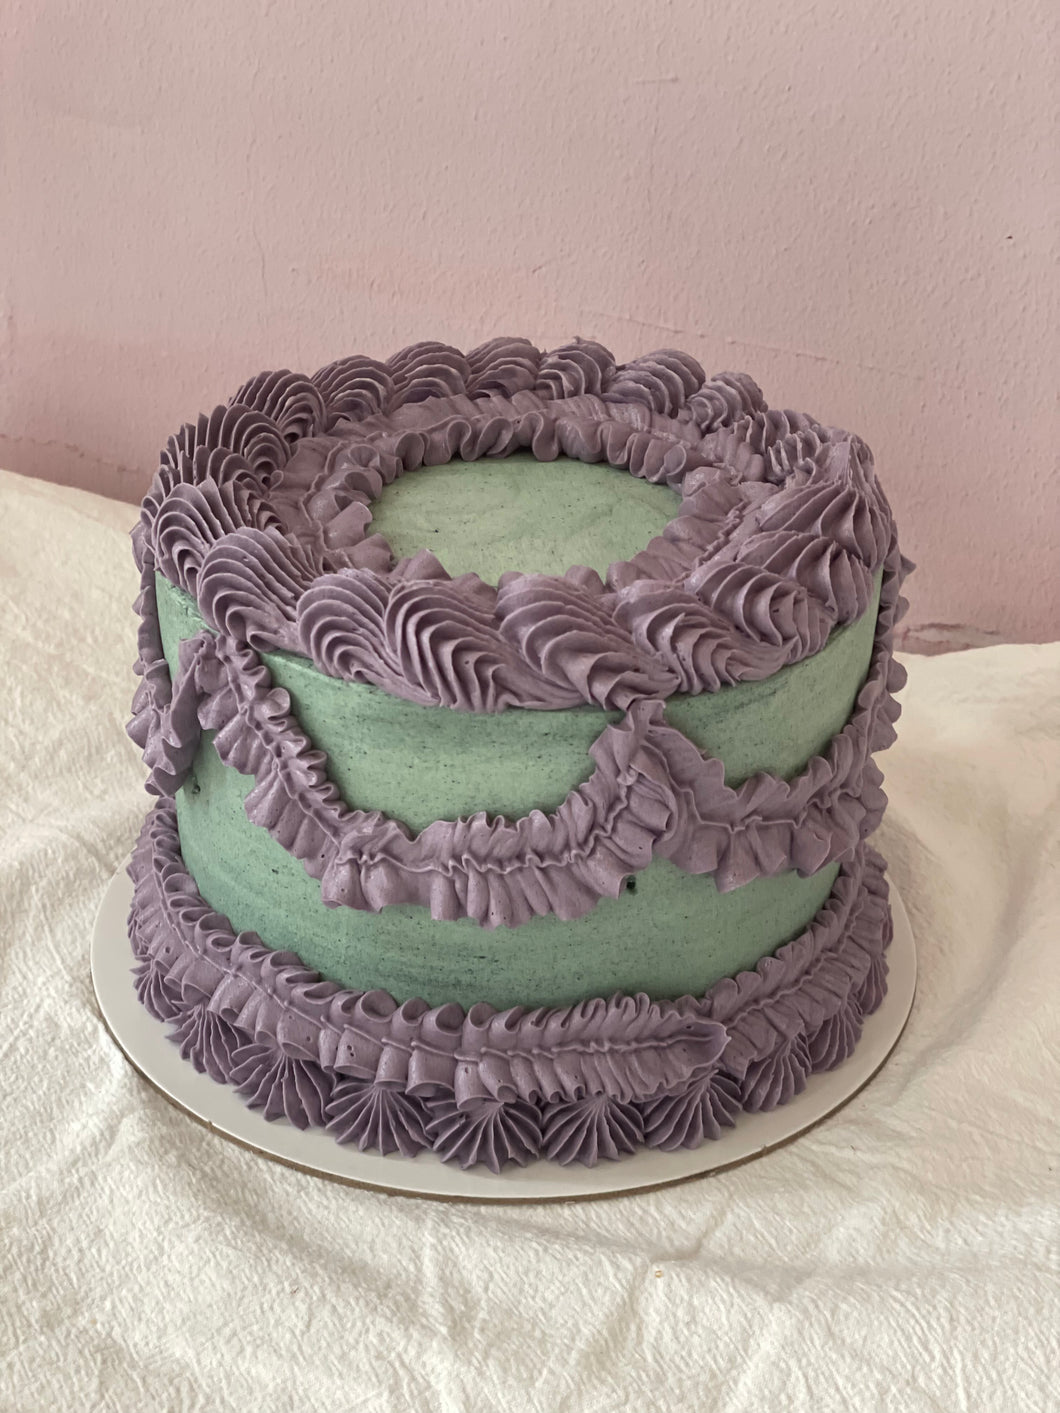 6” Vintage Brenda cake